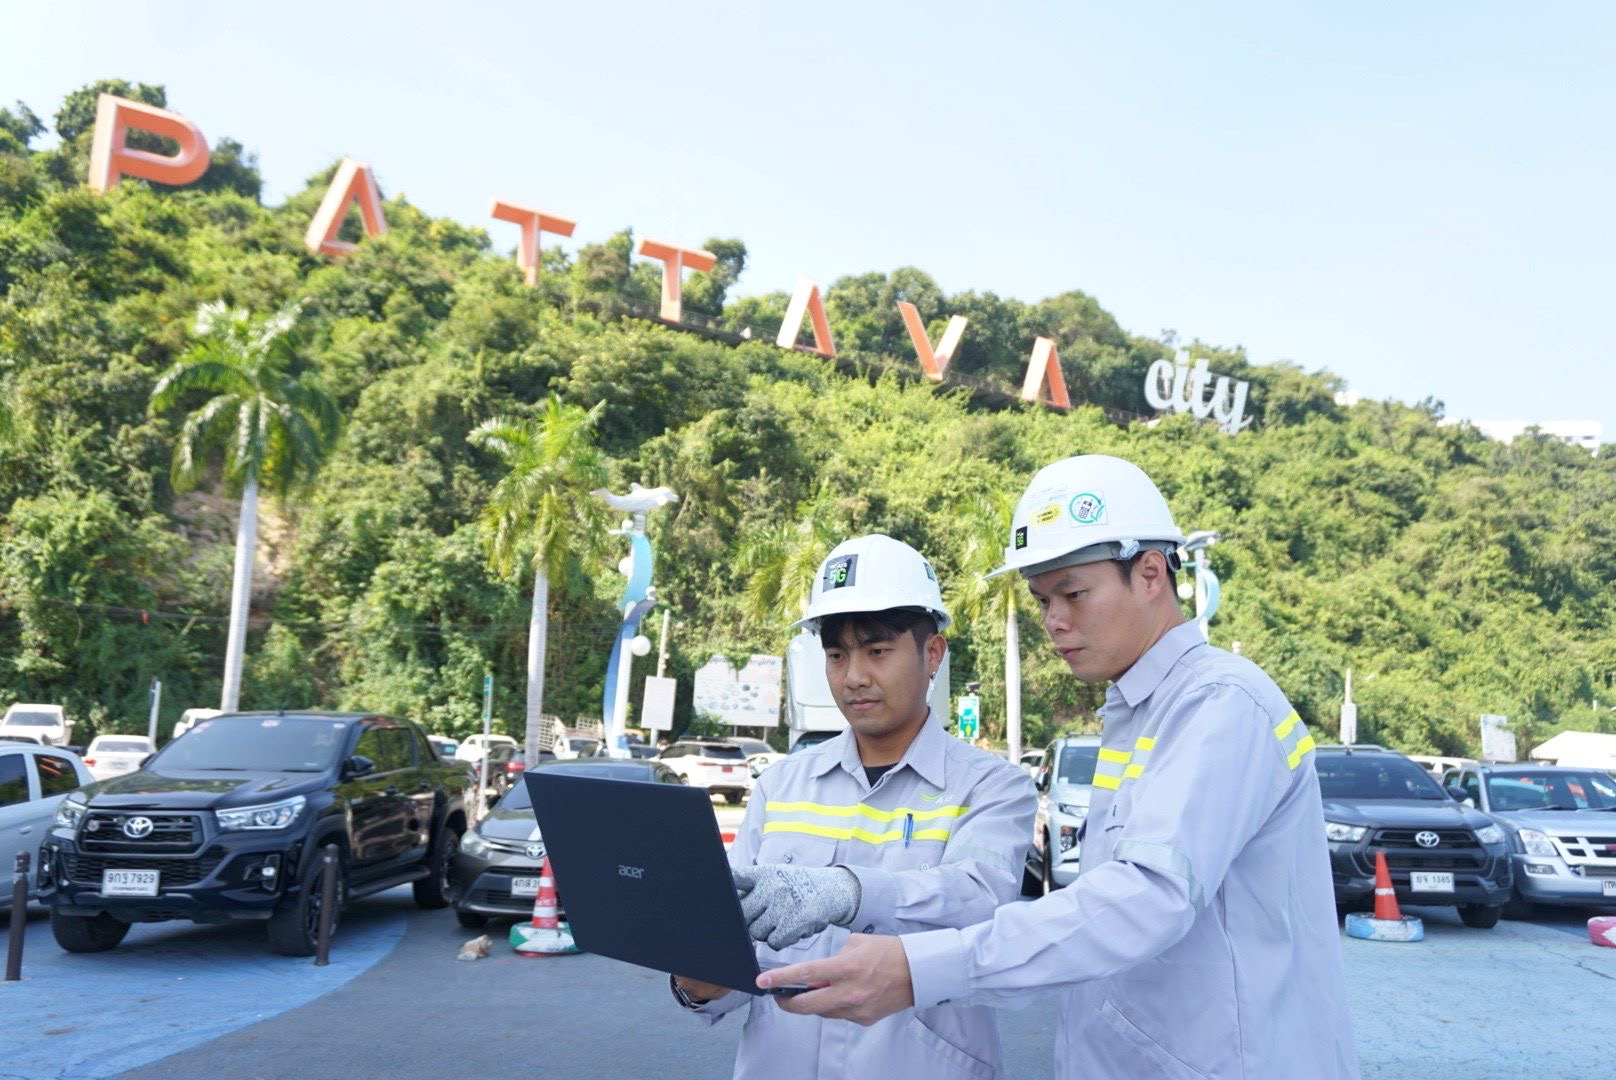 AIS ยืนยันความพร้อมโครงข่ายดิจิทัล 5G และ AIS Fibre ด้วย Autonomous Network Monitoring ดูแลการใช้งาน 24 ชั่วโมง ลูกค้าและคนไทยฉลองปีใหม่อุ่นใจรับปี 2023